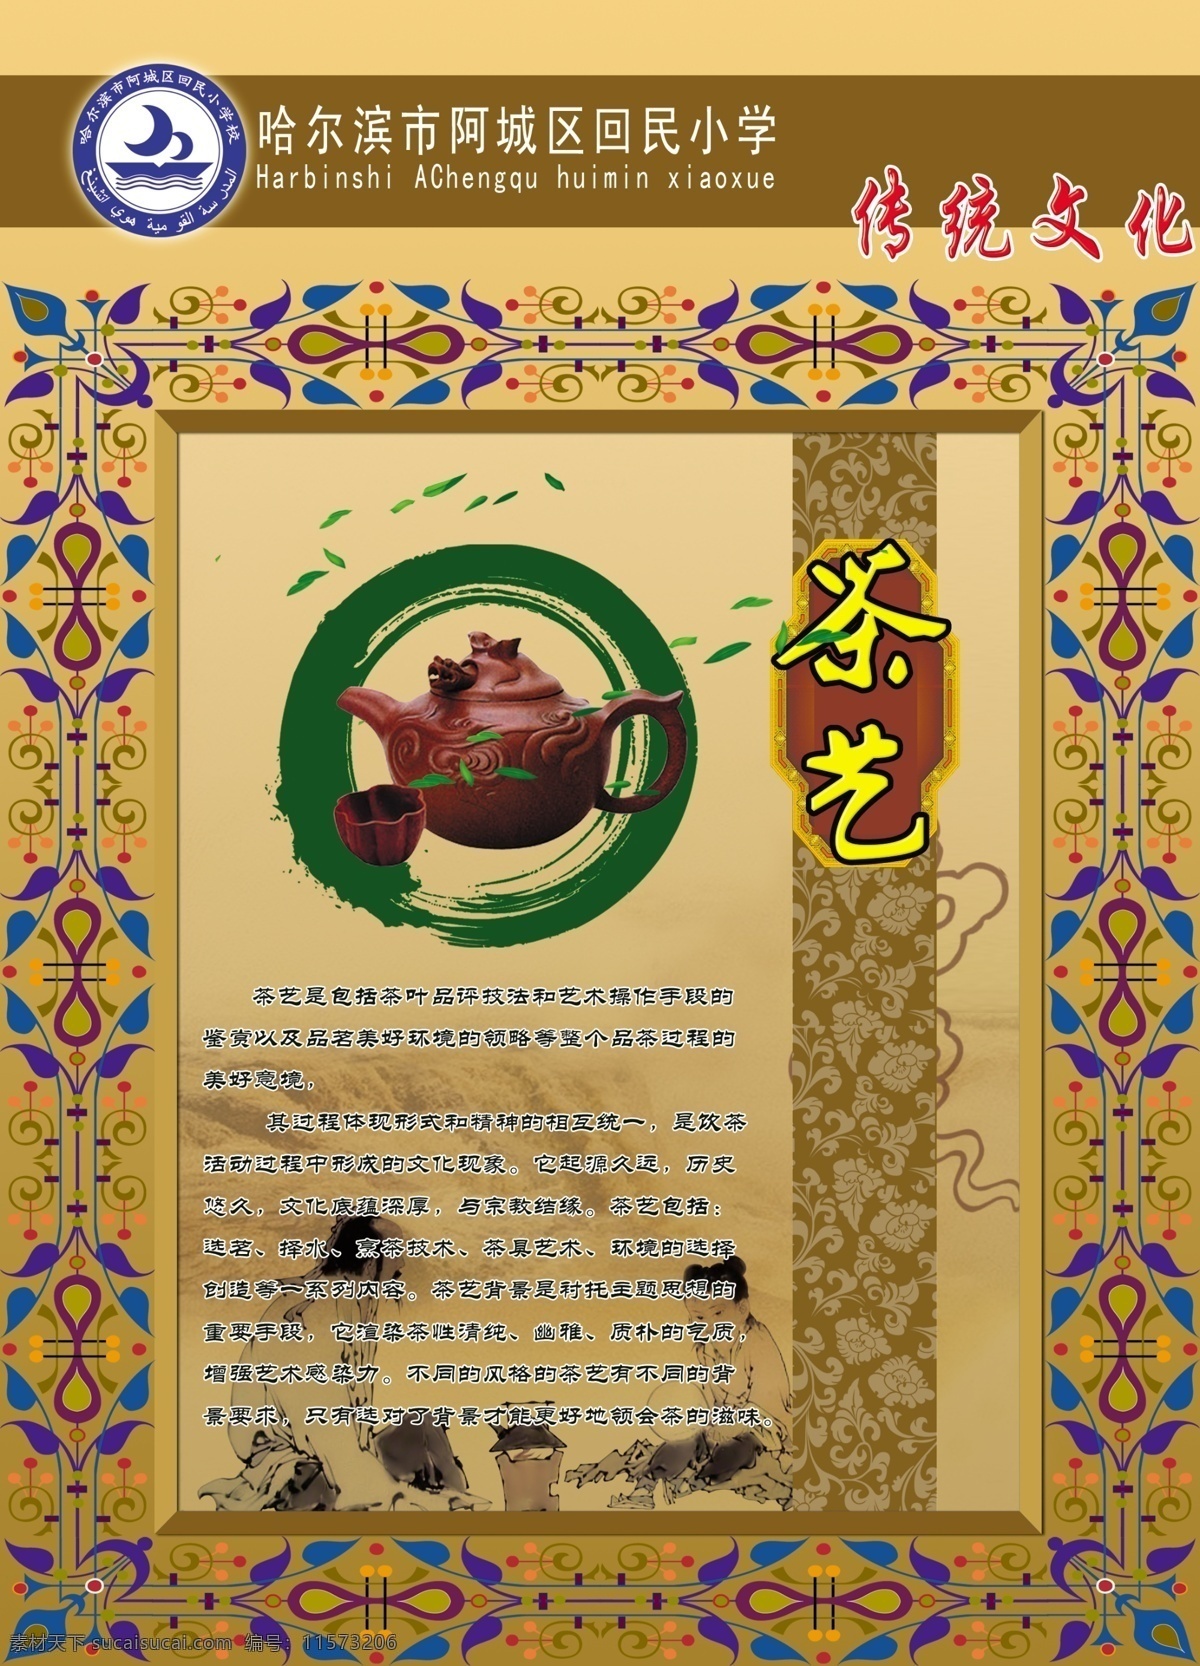 茶道 茶壶 茶艺 传统文化 广告设计模板 回族 民族文化 图板 校园文化展板 校园文化 回民 回族边框 阿拉伯边框 展板模板 源文件 其他展板设计